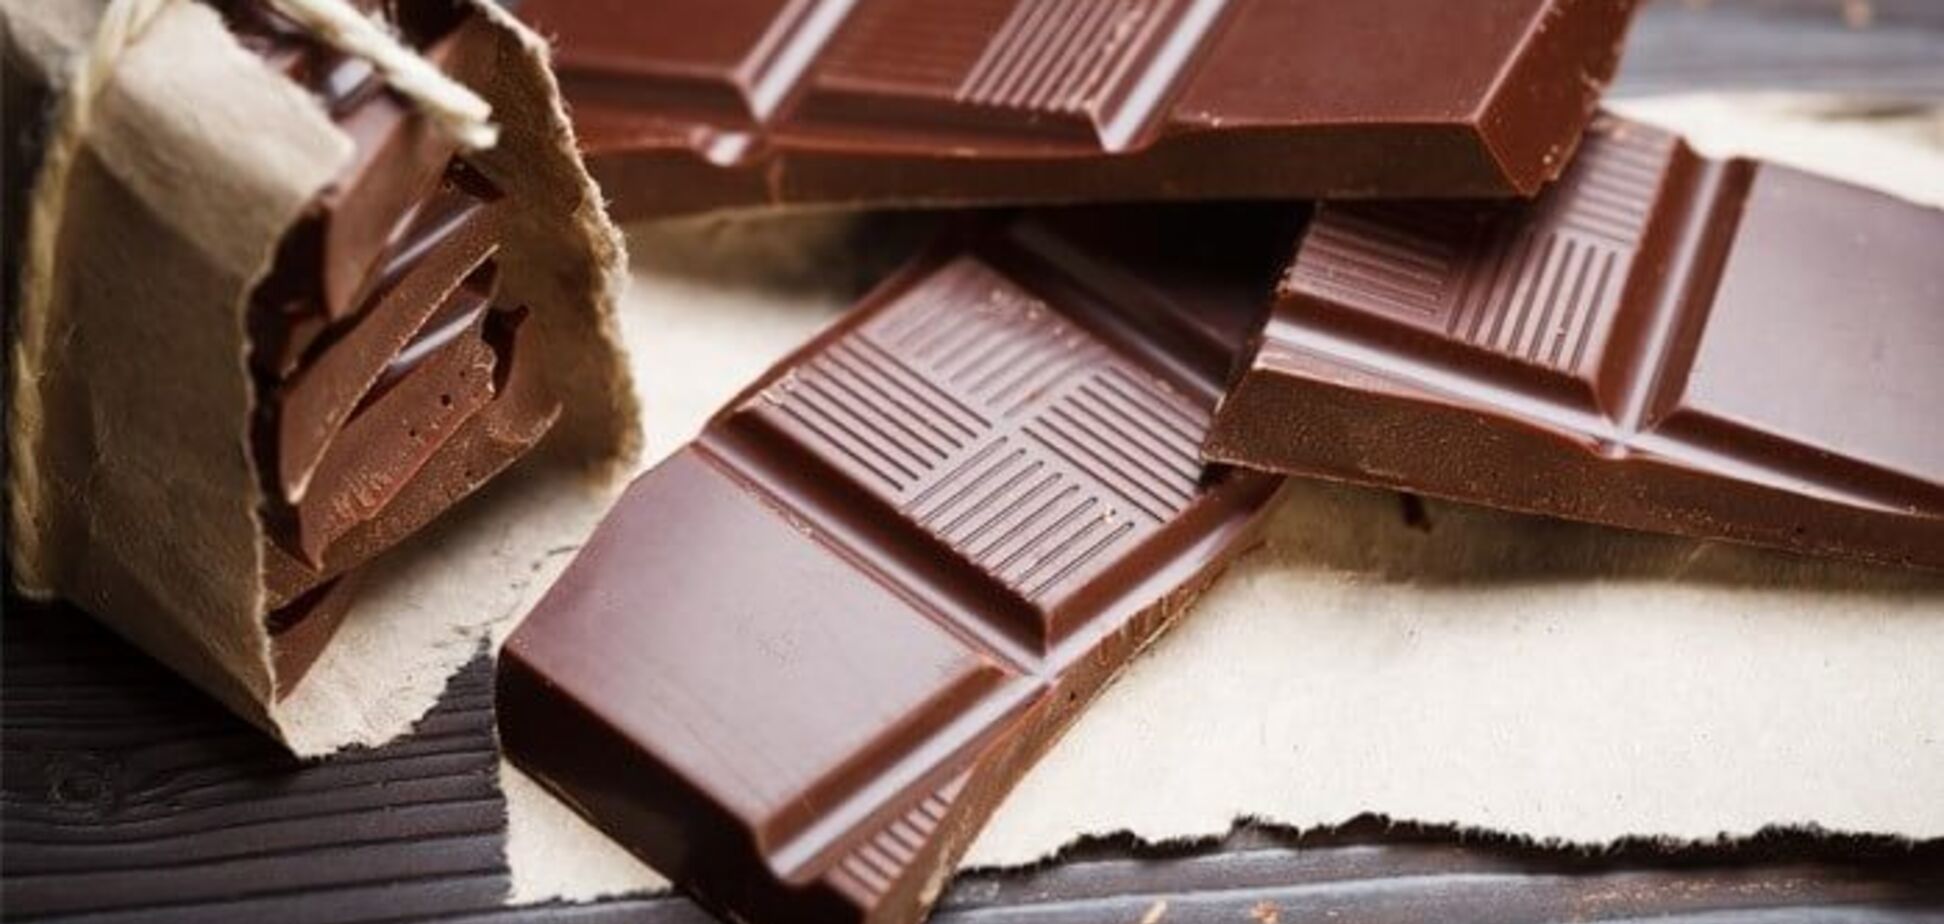 Як схуднути за допомогою шоколаду: названий спосіб